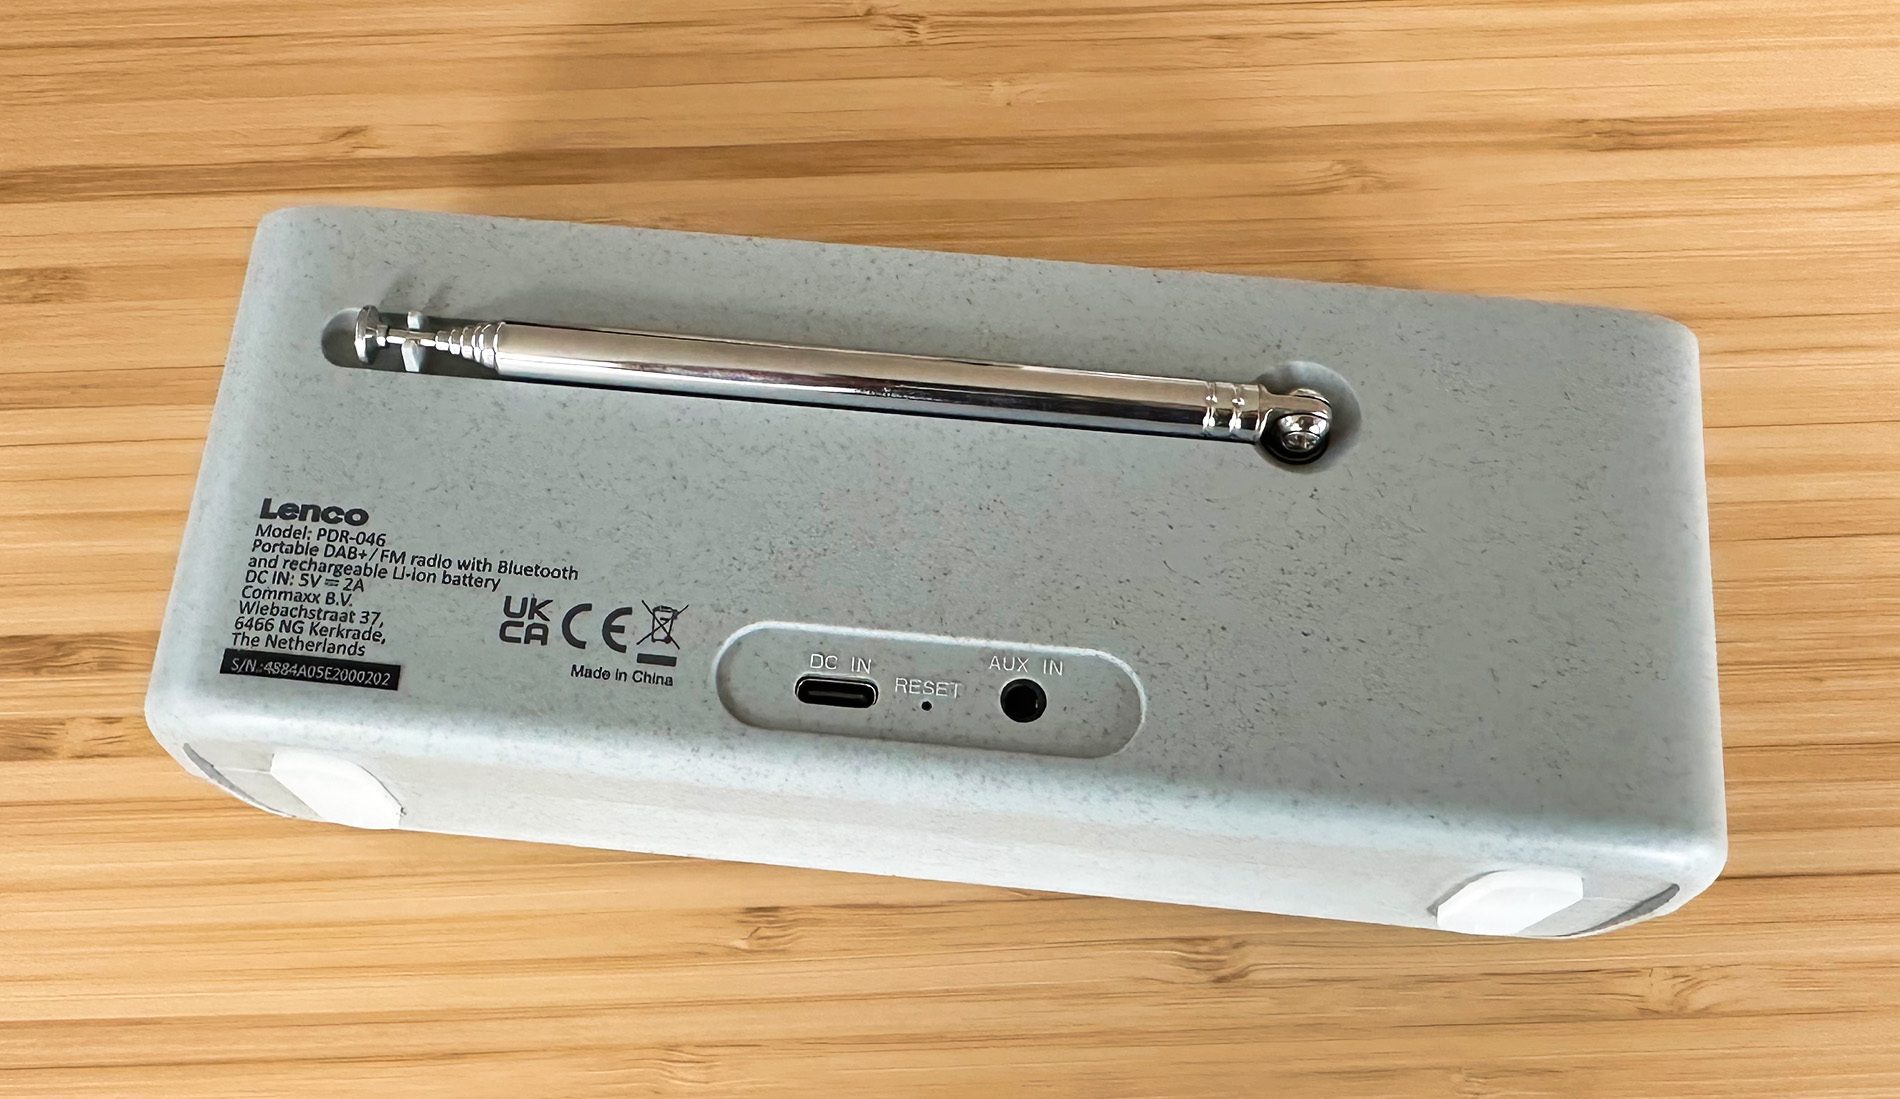 Auf der Rückseite des Lenco-Radios findet man die USB-C-Ladebuchse und den AUX-Eingang mit dem typischen 3,5-mm-Klinkeneingang.